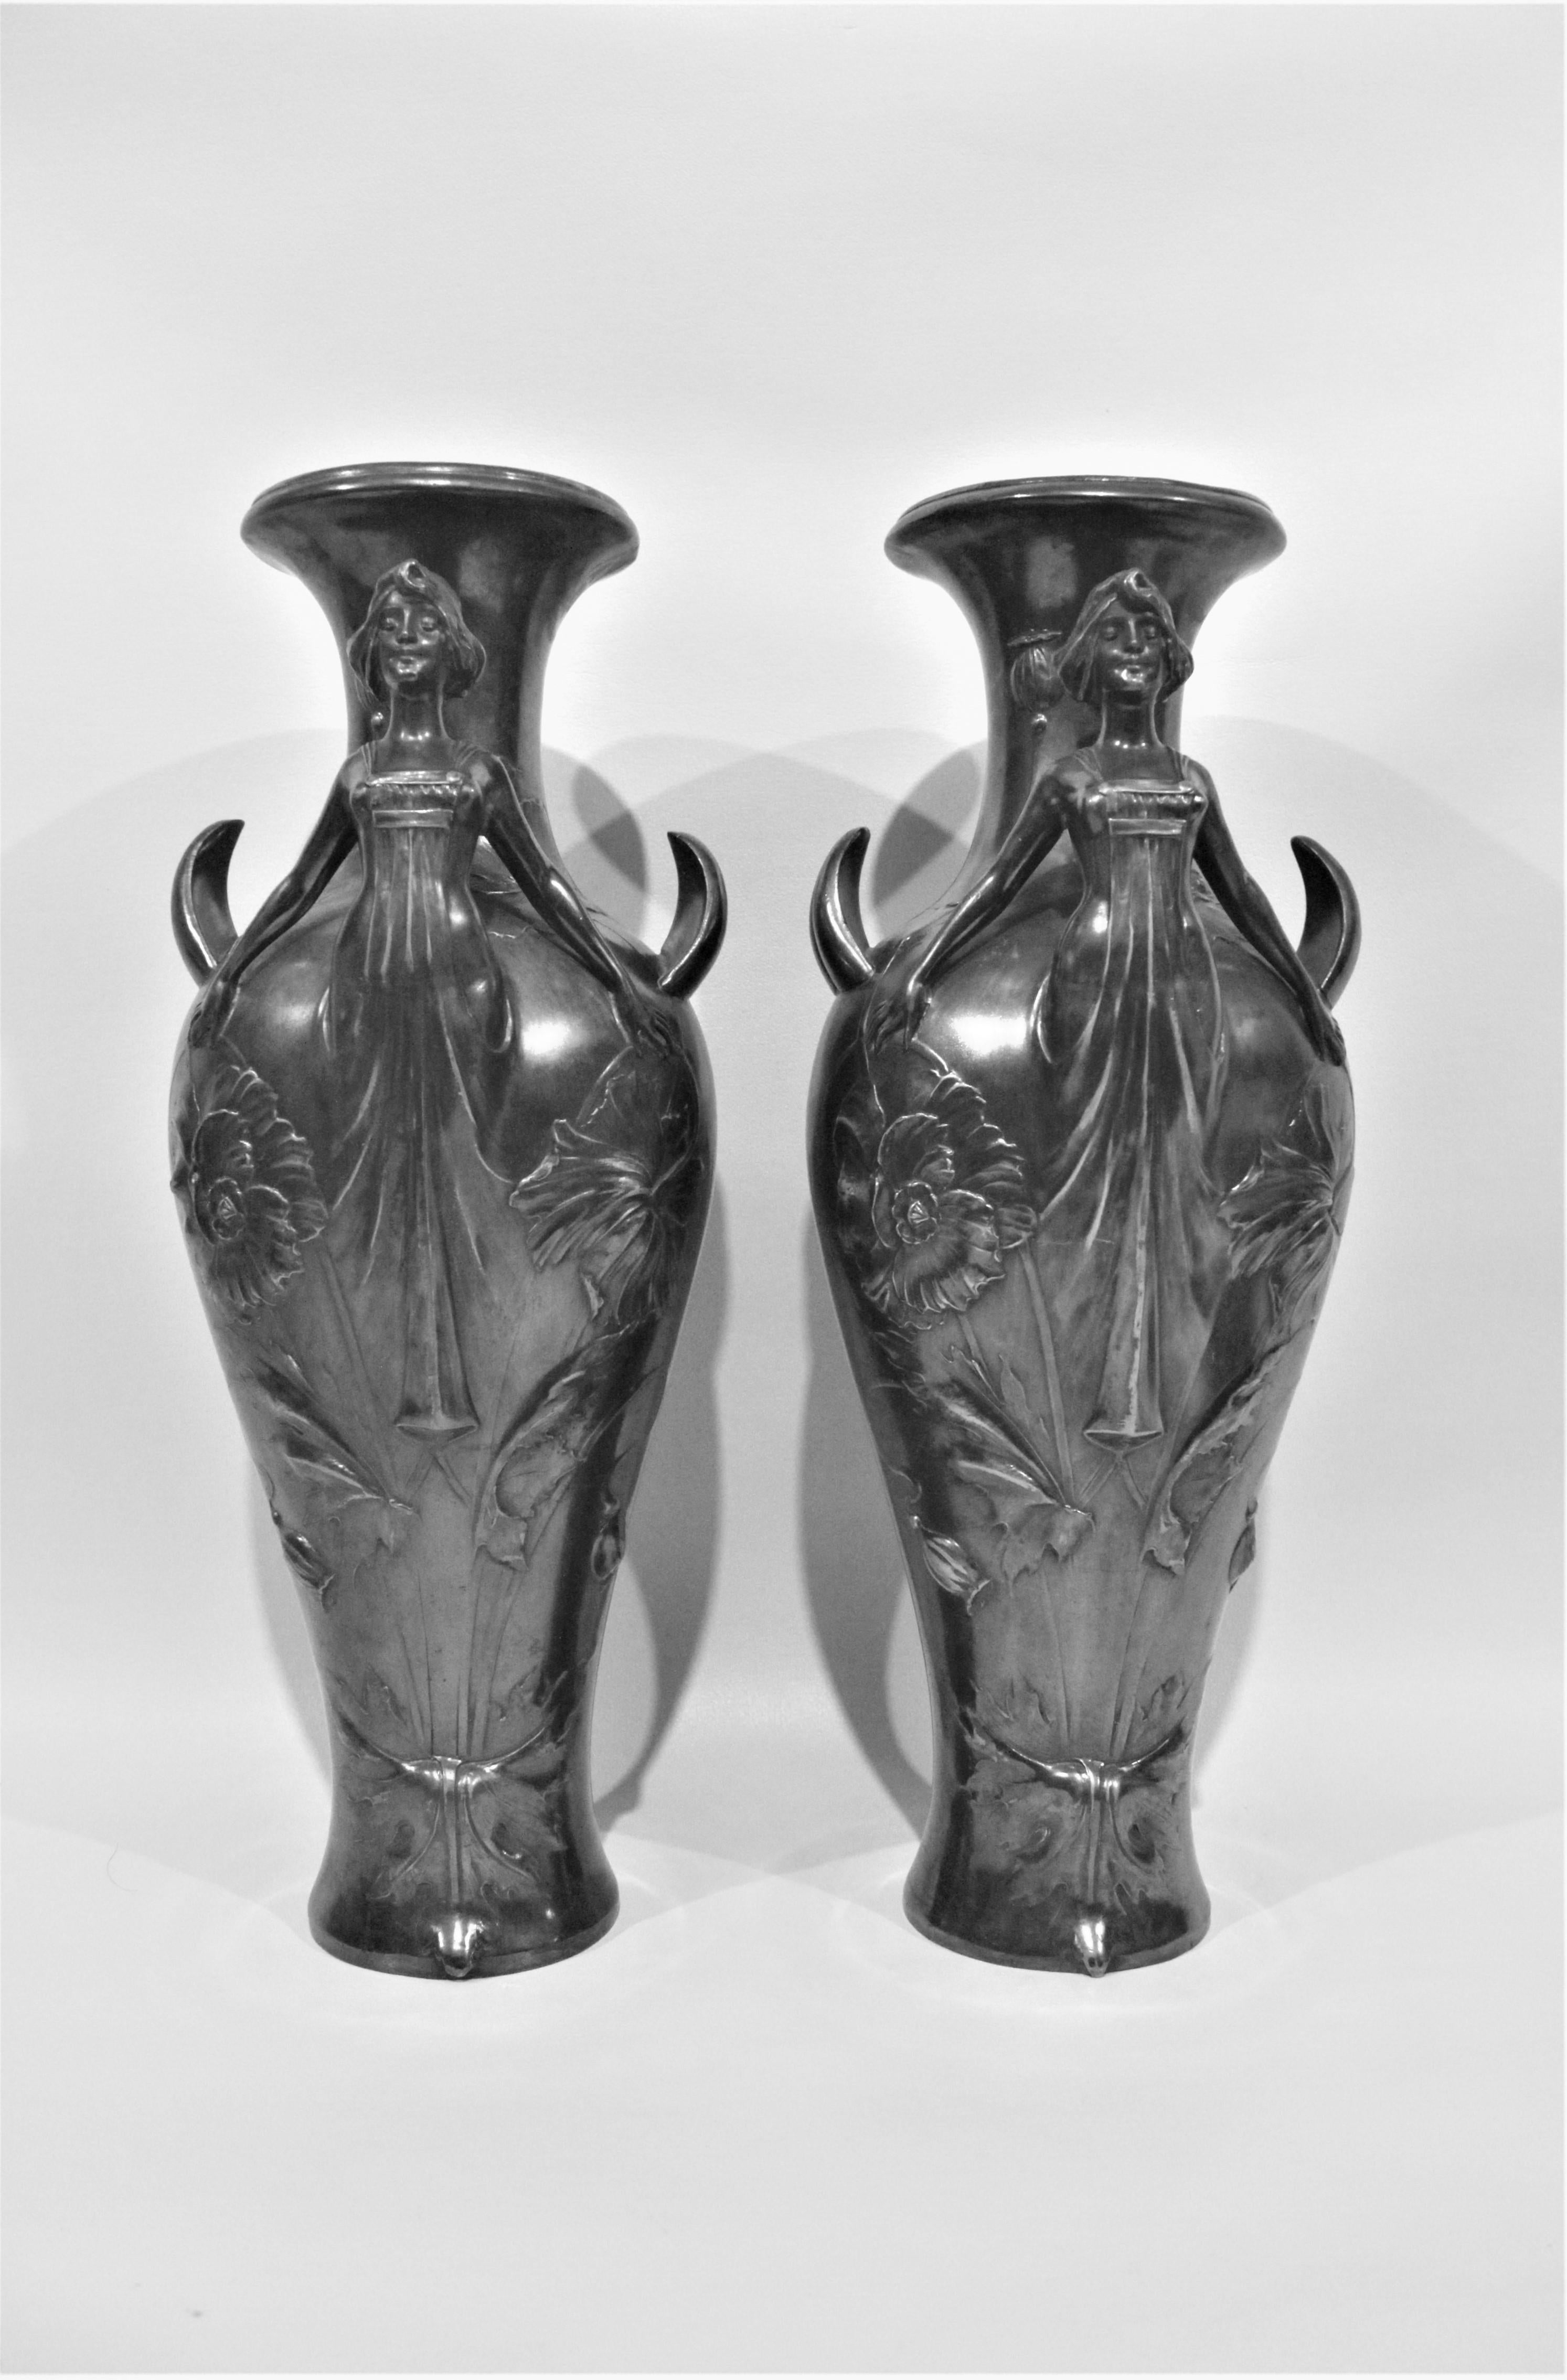 Dieses Paar versilberter Vasen, die jeweils eine stilisierte Frau im Gewand mit ausgestreckten Armen darstellen, wurde wahrscheinlich in Frankreich hergestellt, ist aber nicht gekennzeichnet. Die Arme dienen als Henkel für die Vasen und die Körper